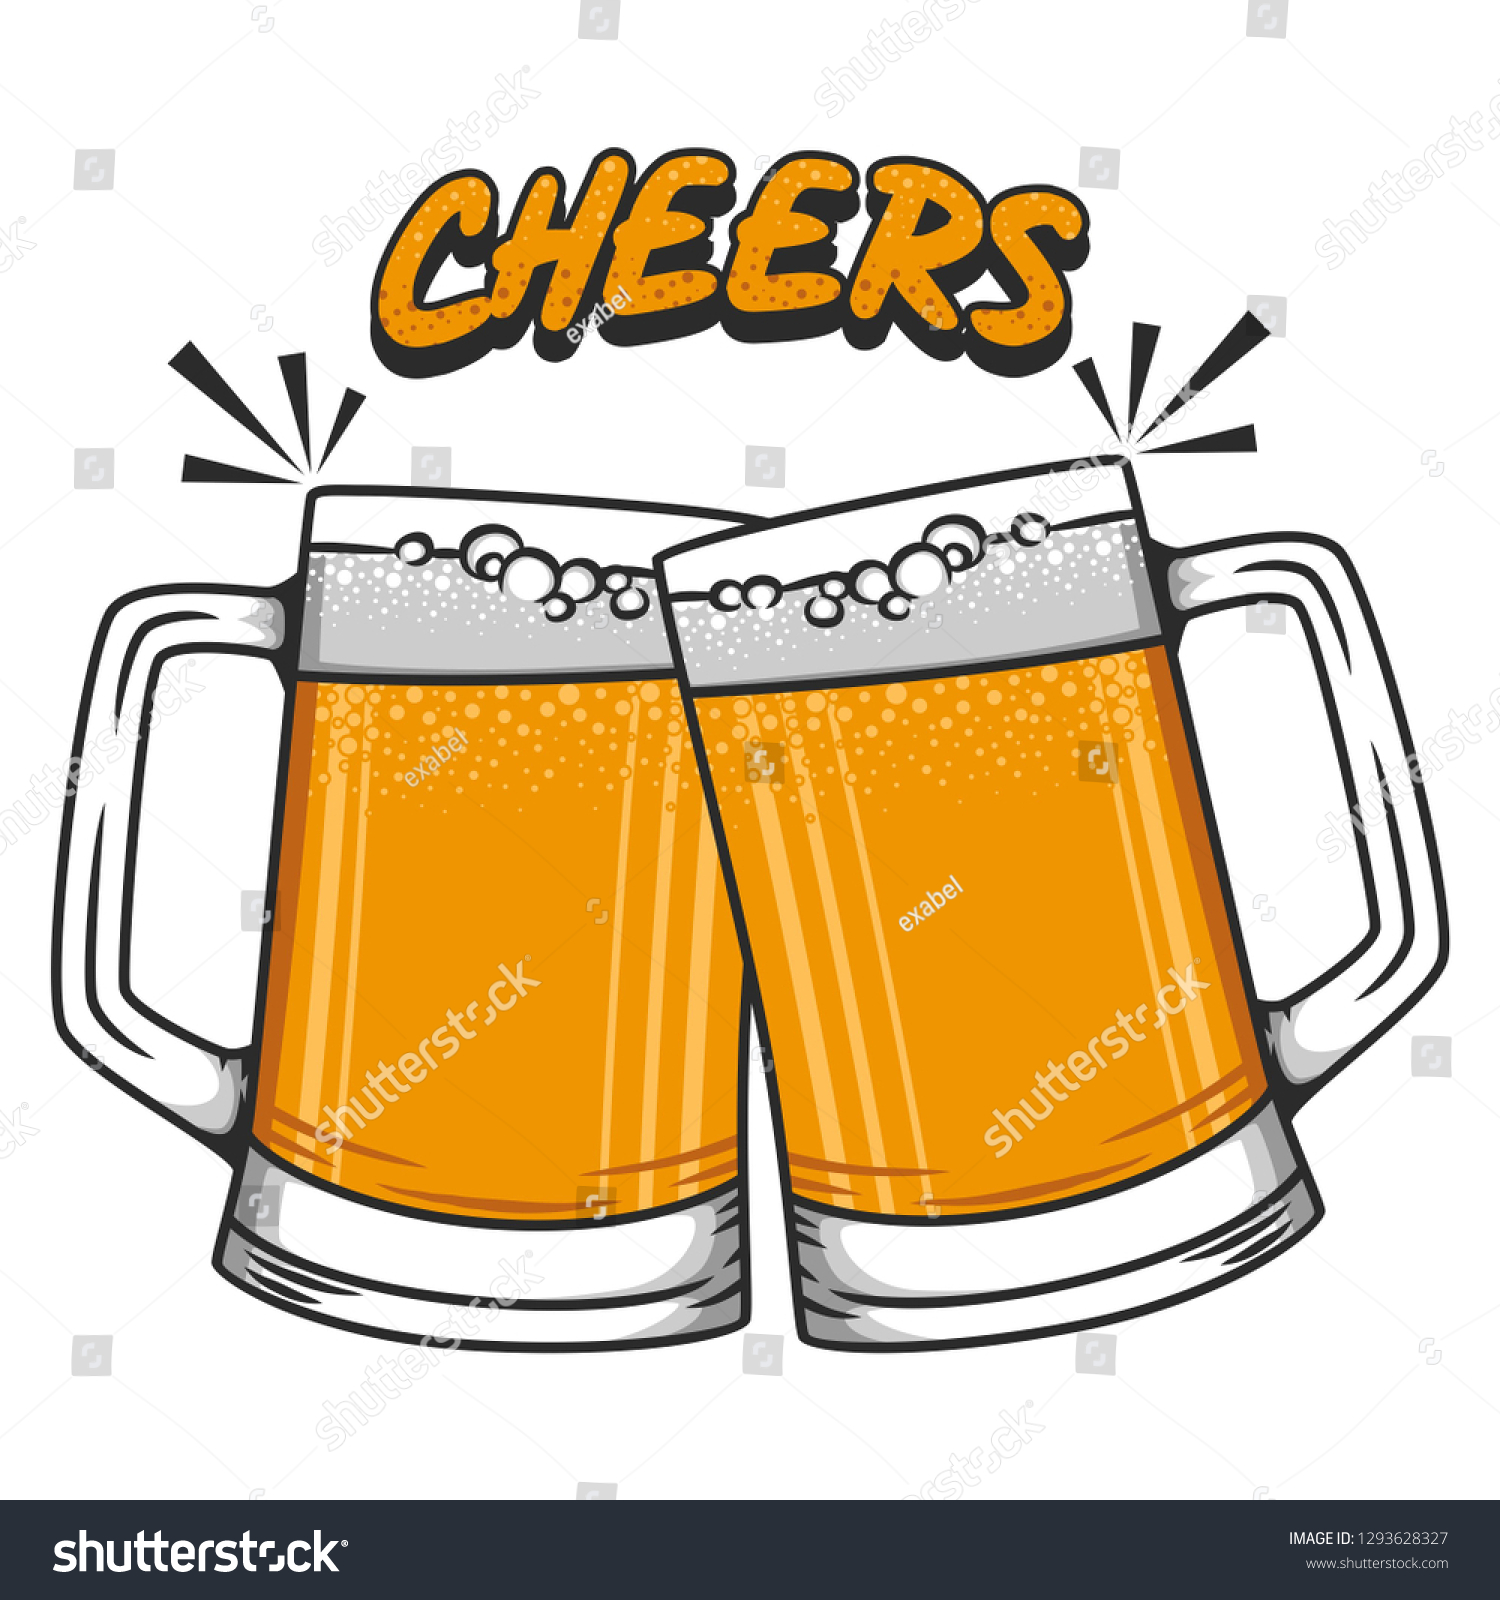 Cheers Beer Vector Illustration